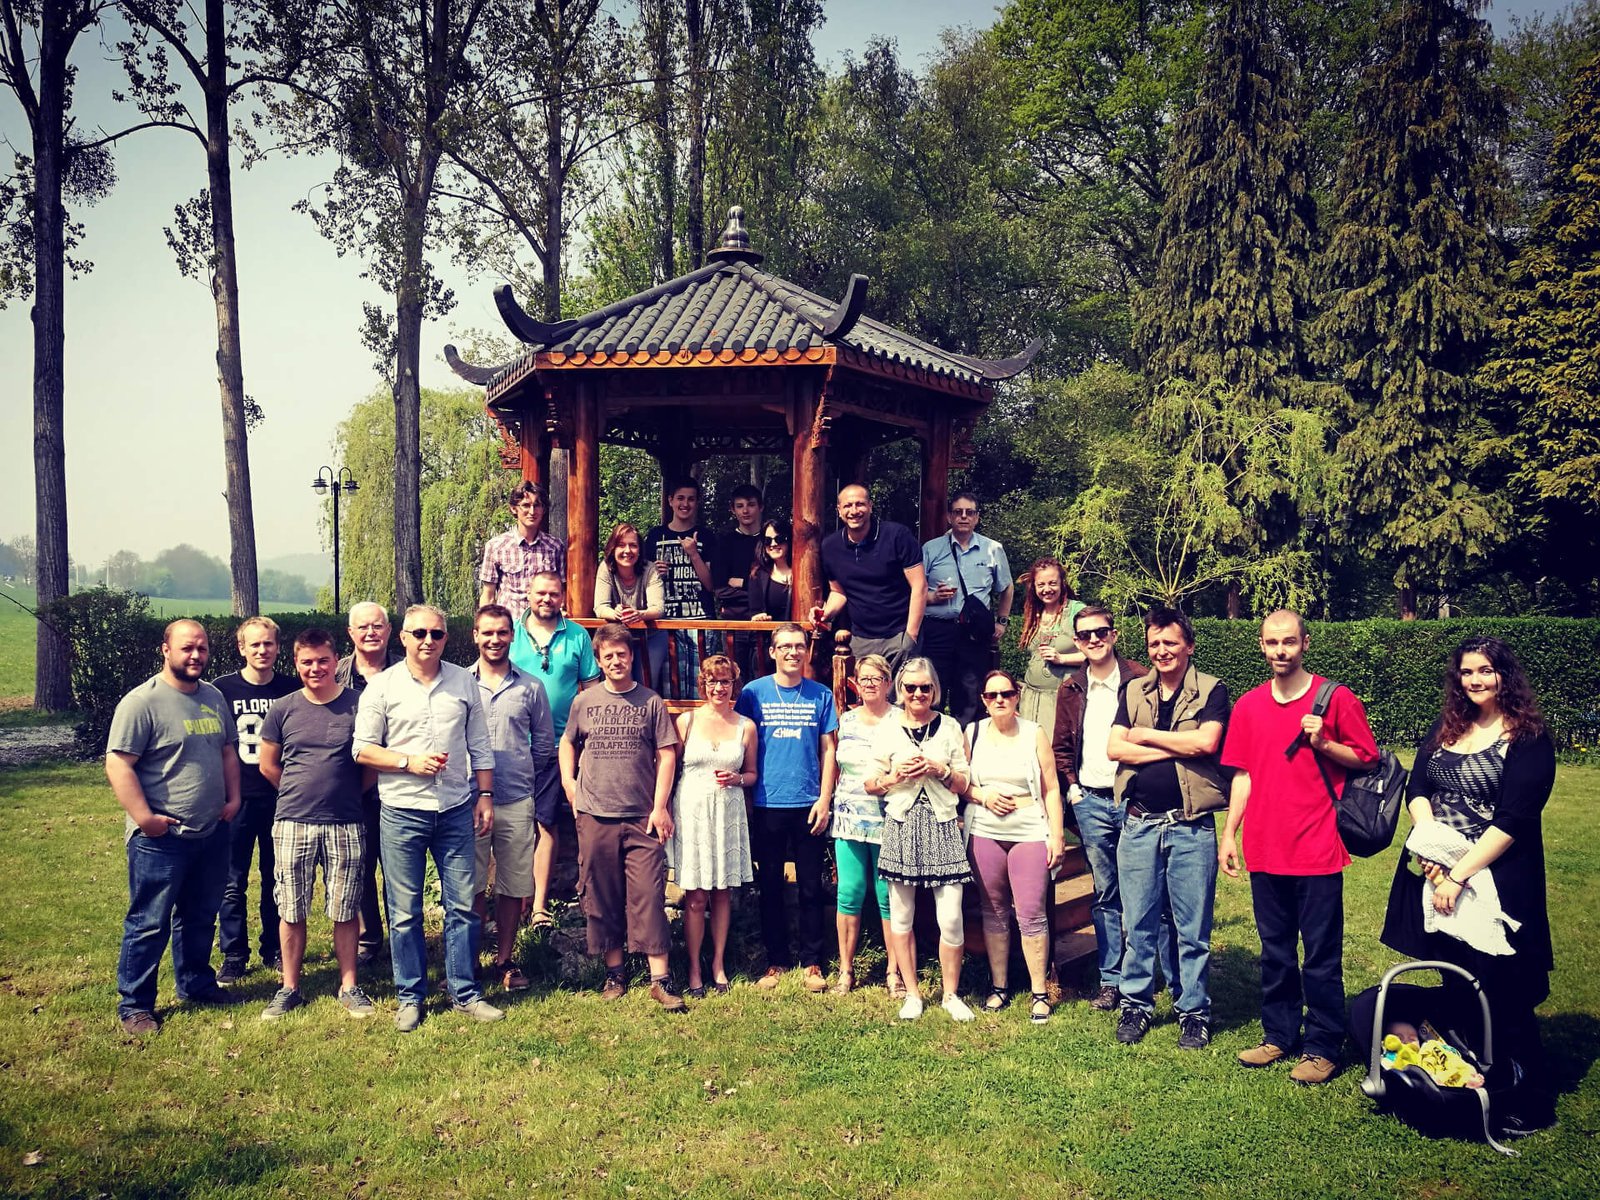 Réunion avec les membres observateurs de Belgorage le 21 avril 2018 à Malonne dans la province de Namur